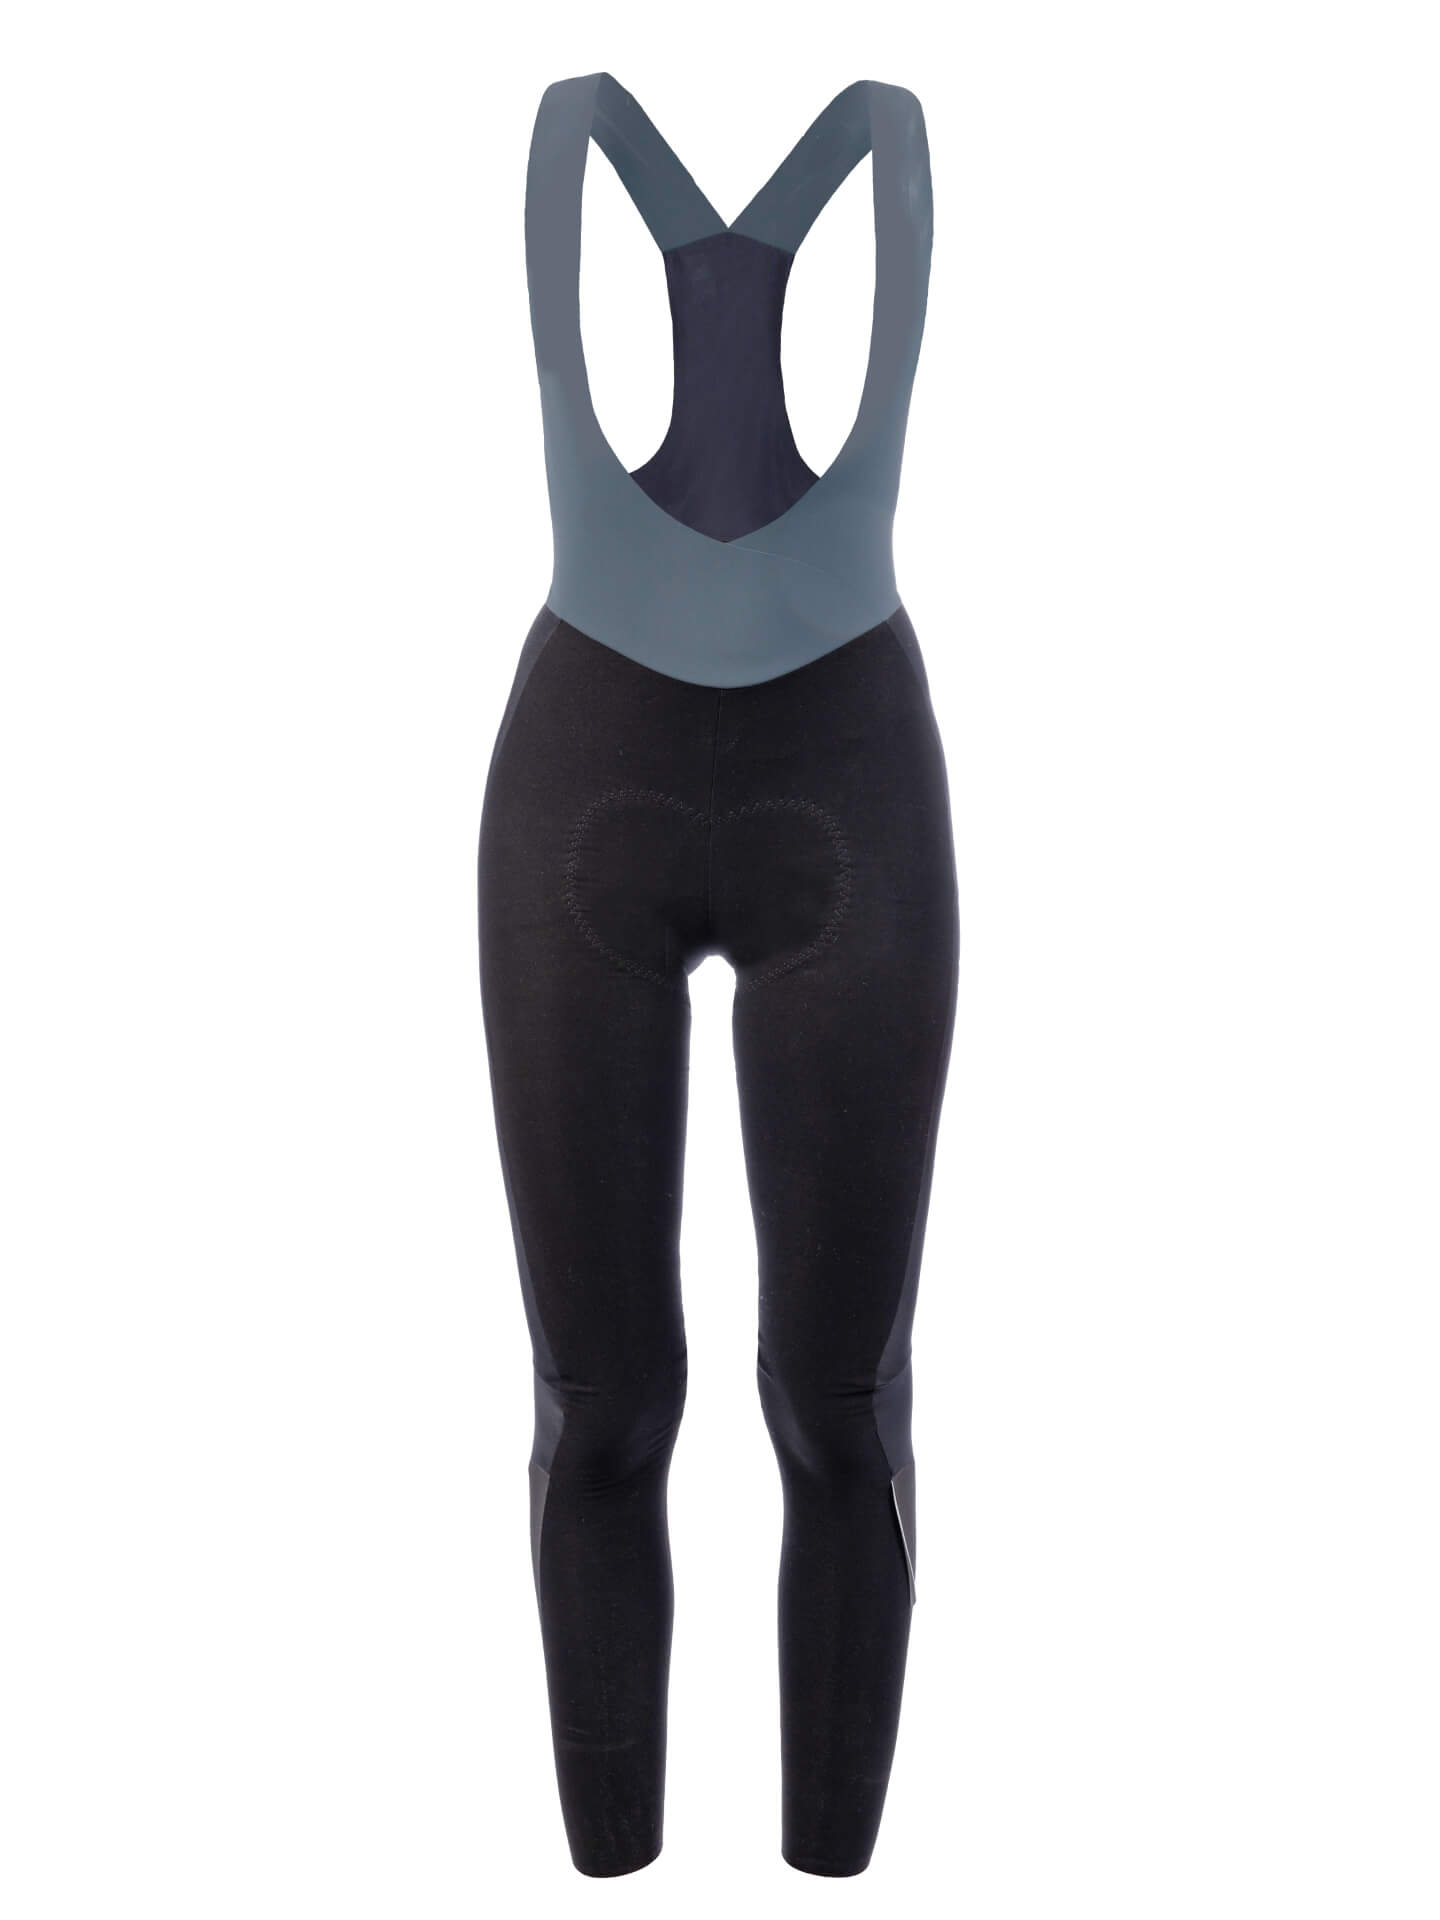 Womens cycling tights: winter, thermal, waterproof, padded long bib shorts  • Q36.5